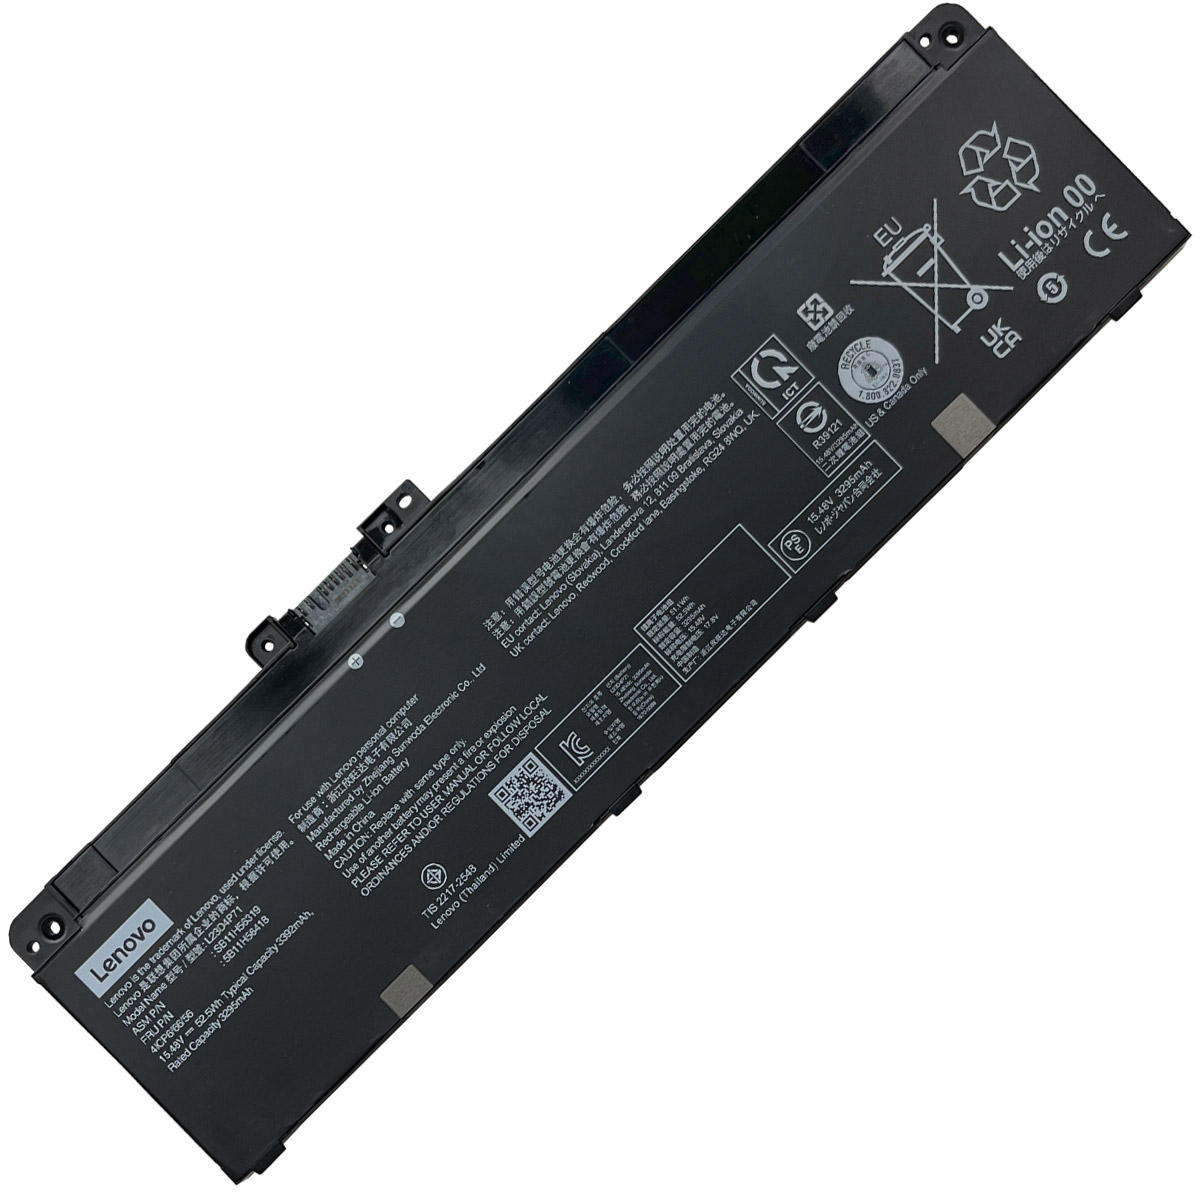 LENOVO-L23C4P71/L23D4P71-Laptop Replacement Battery